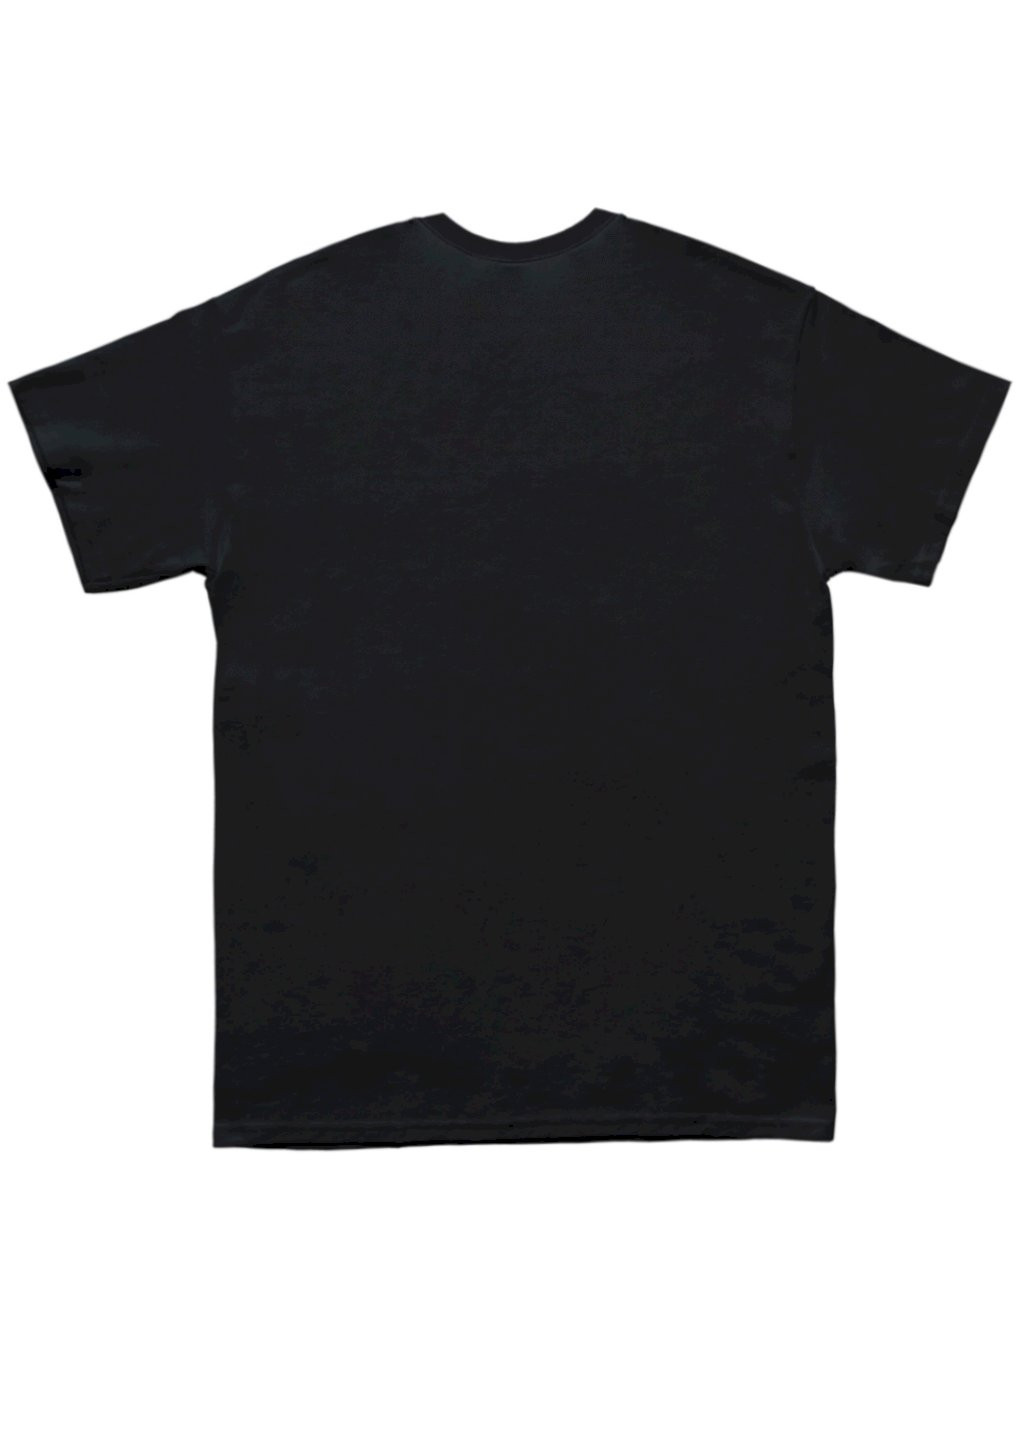 Черная футболка мужская черная "нові виміри" Trace of Space